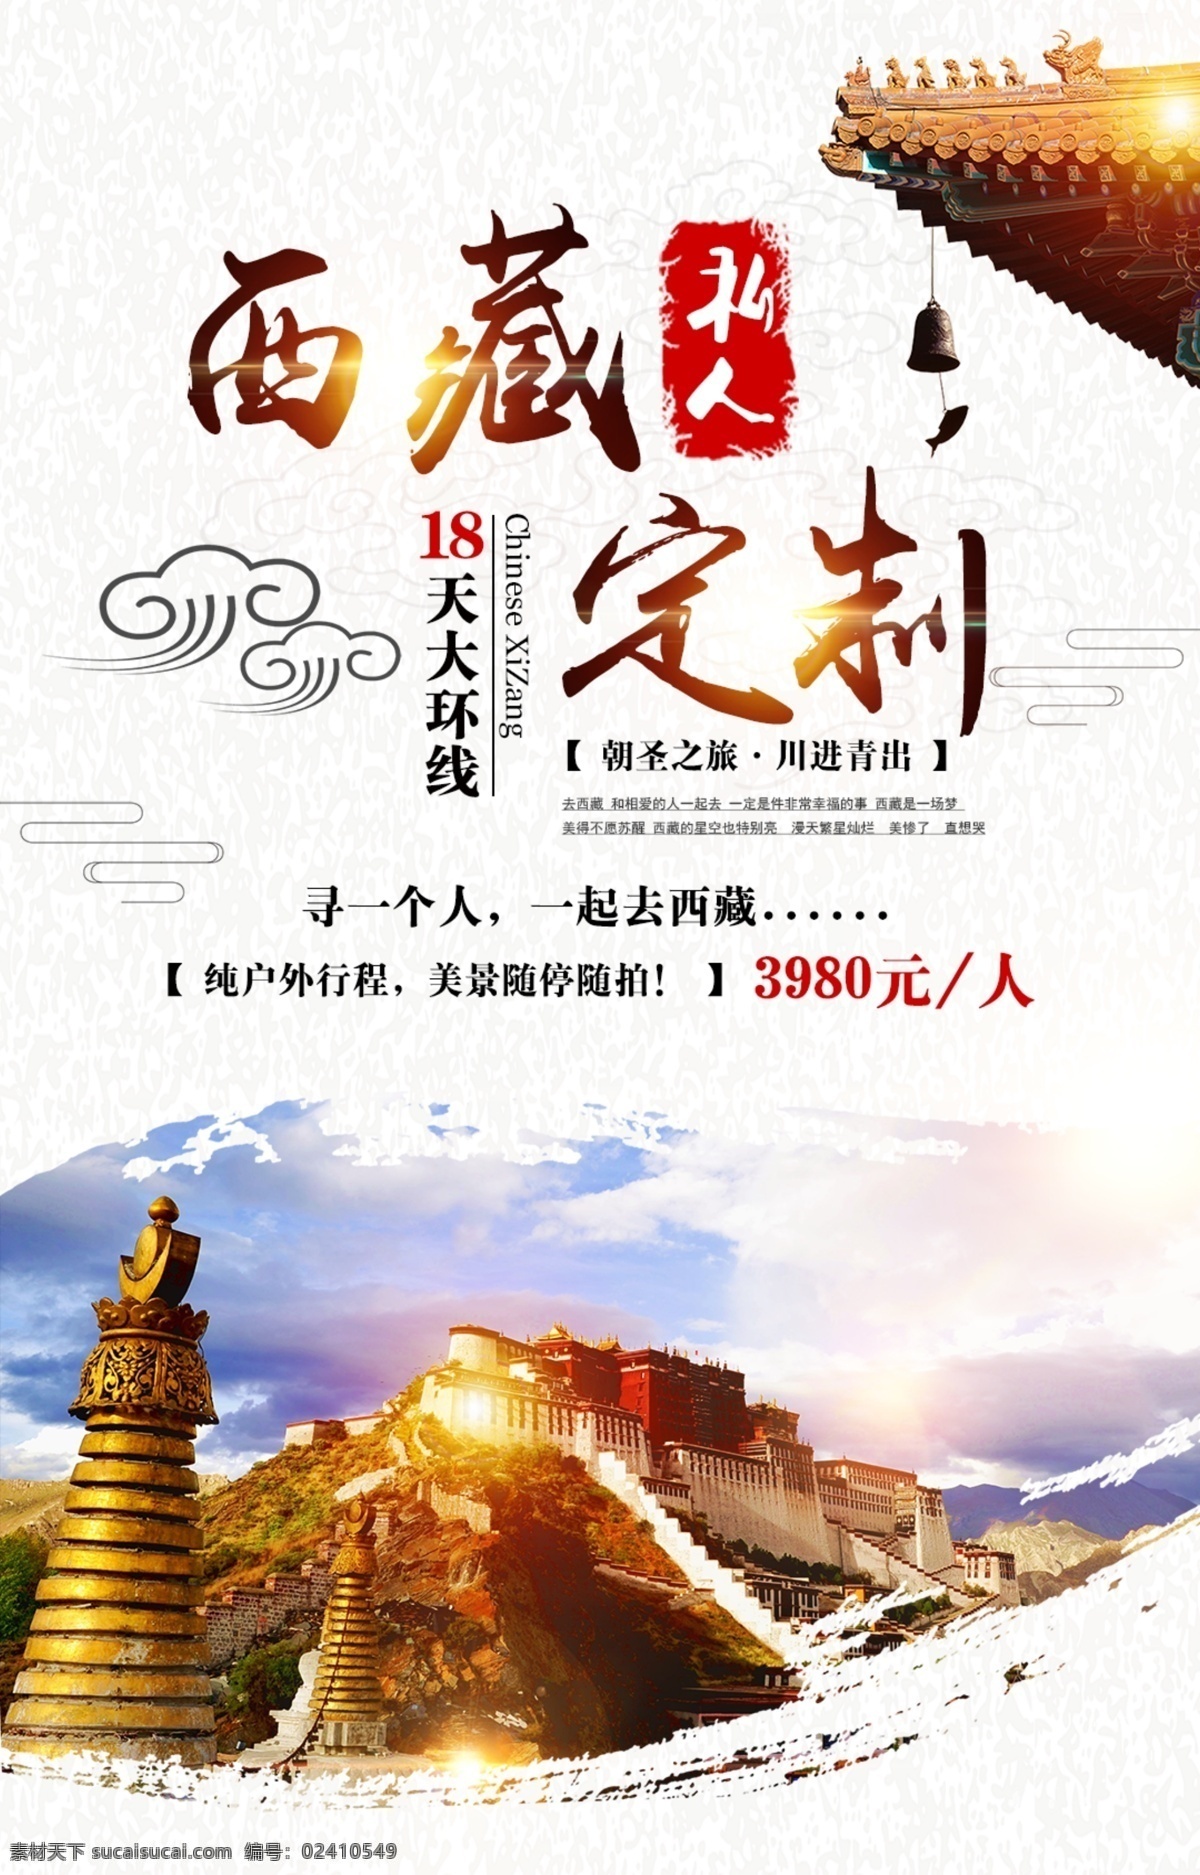 西藏旅游 海报 展板 西藏 旅游 定制 布达拉宫 祥云 风铃